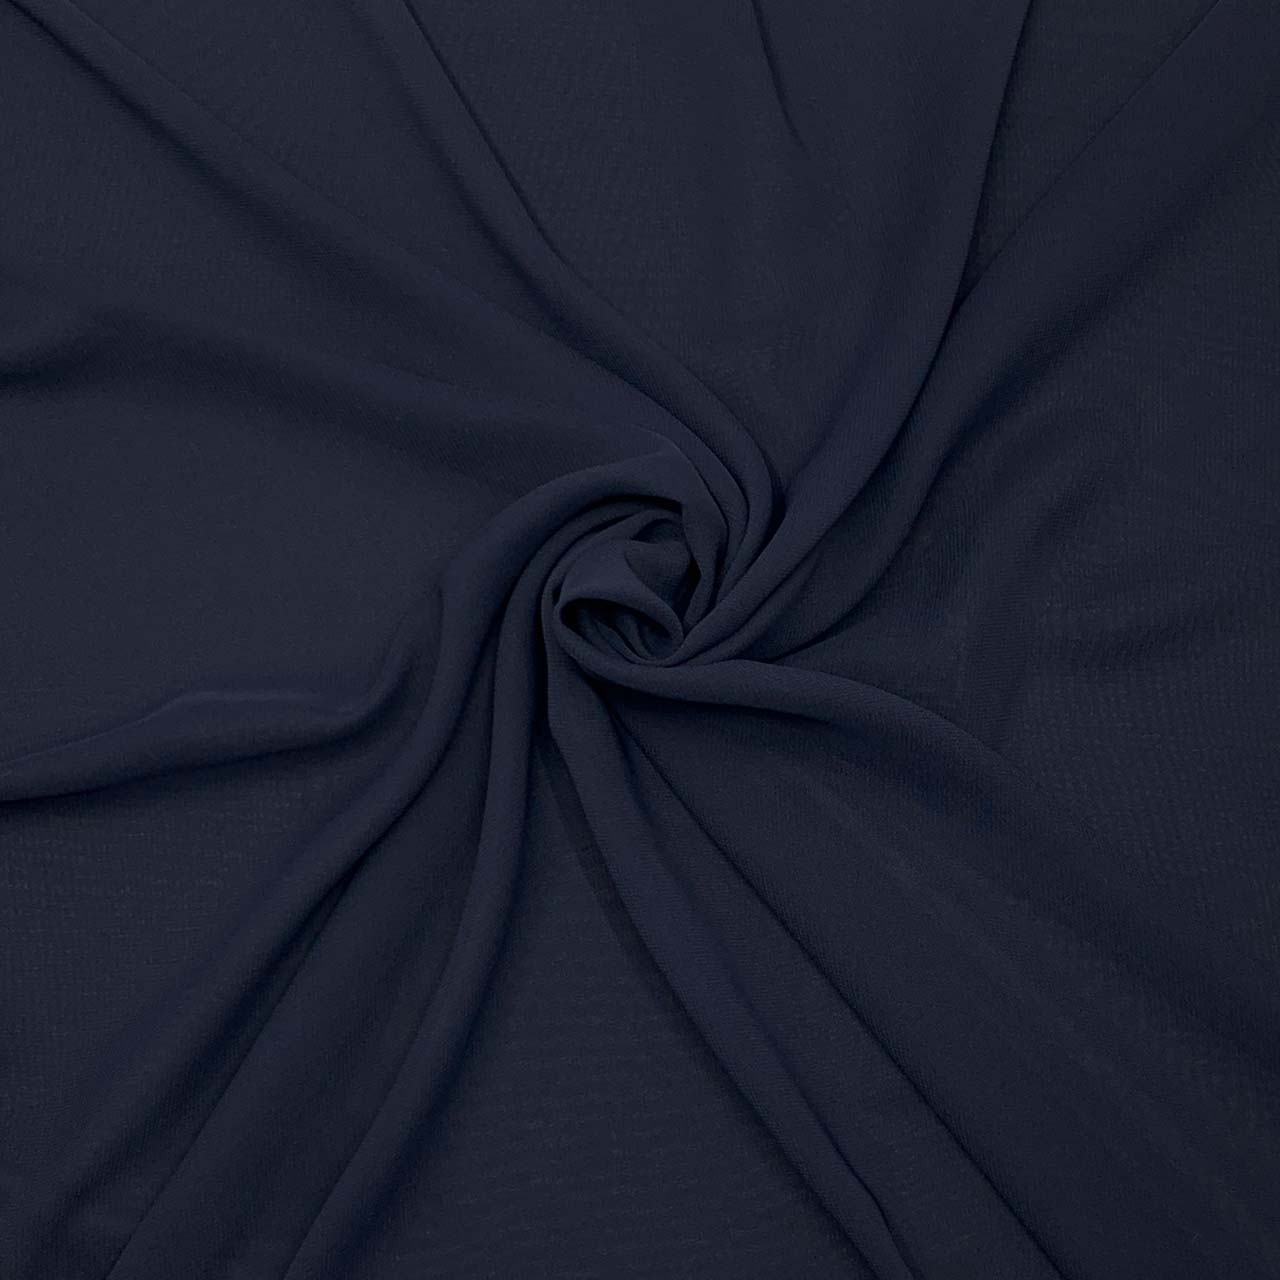 polyester chiffon navy fabric